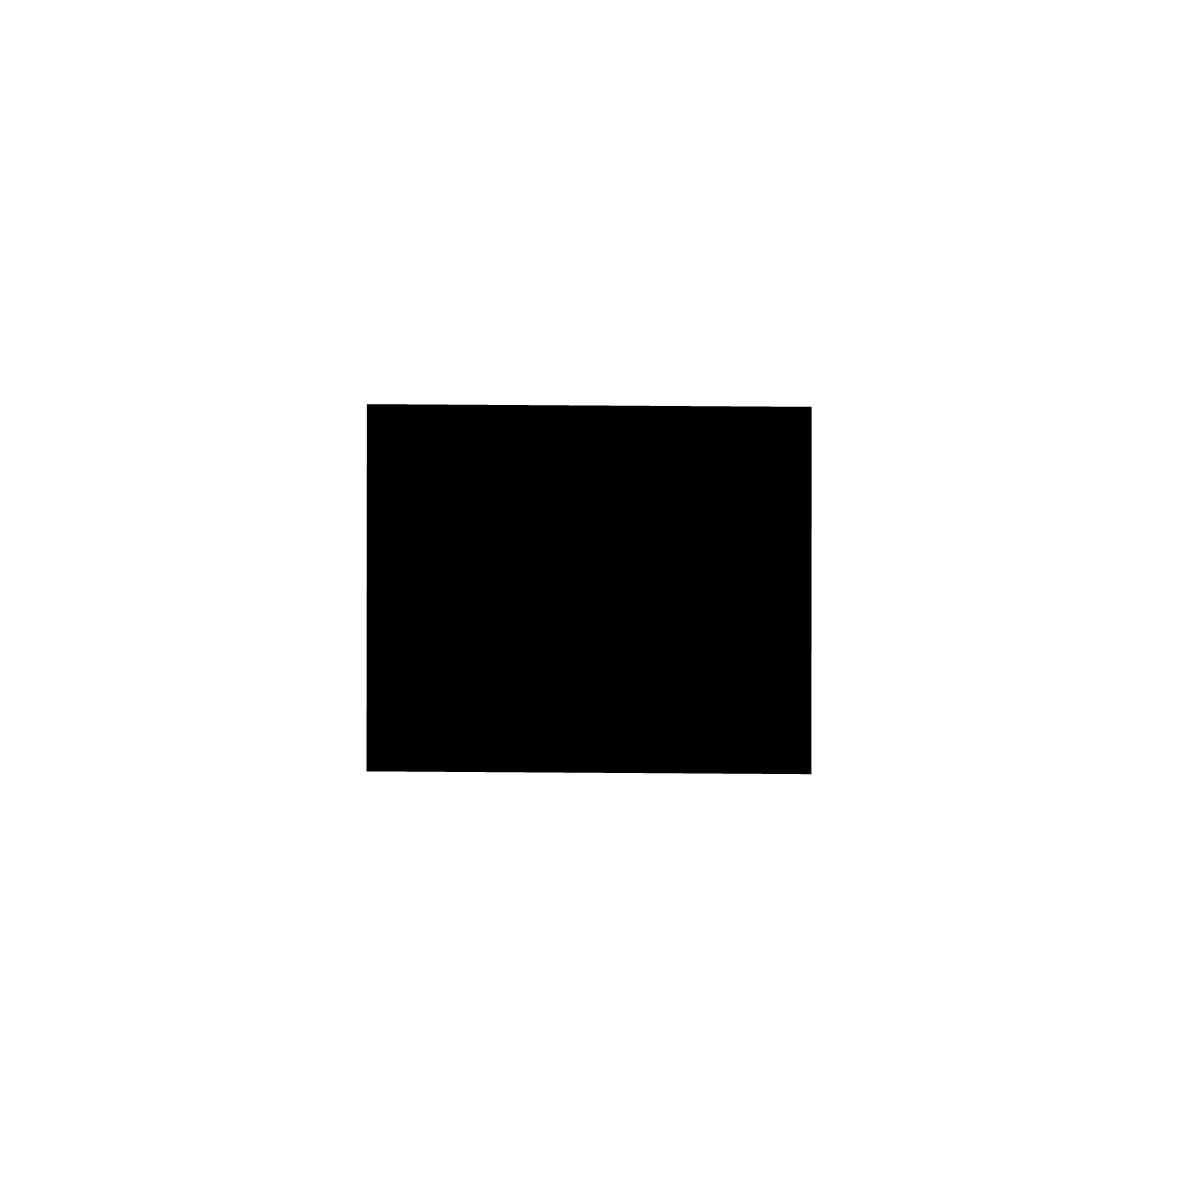 Moosgummidichtung vierkant | 12 mm Breite | Farbe: schwarz